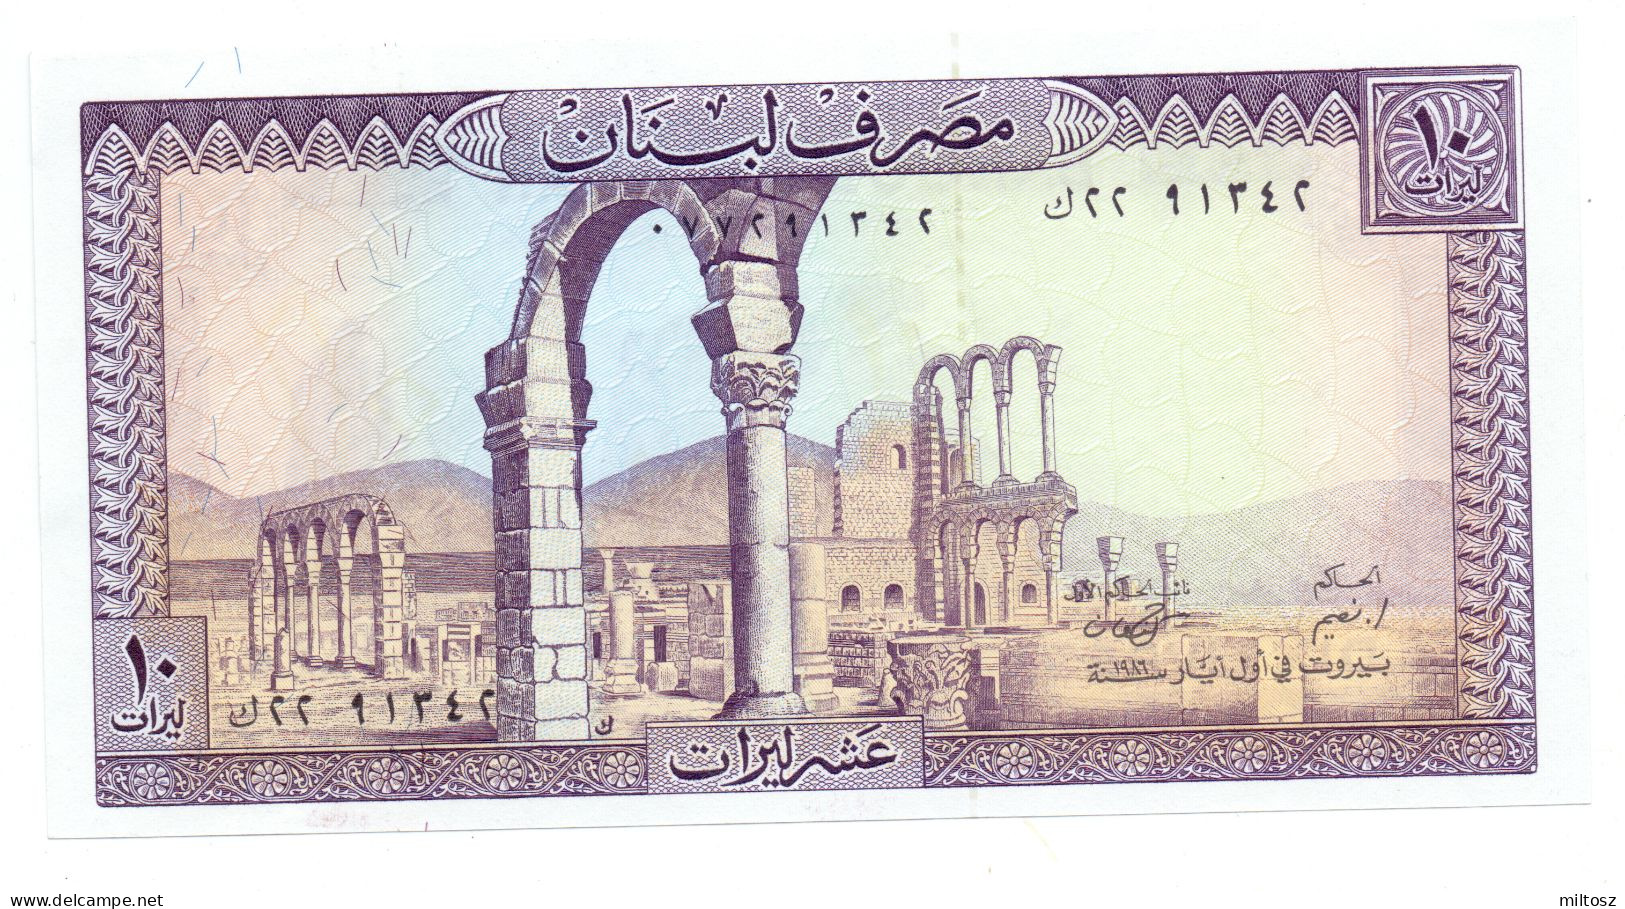 Lebanon 10 Livres 1986 - Liban